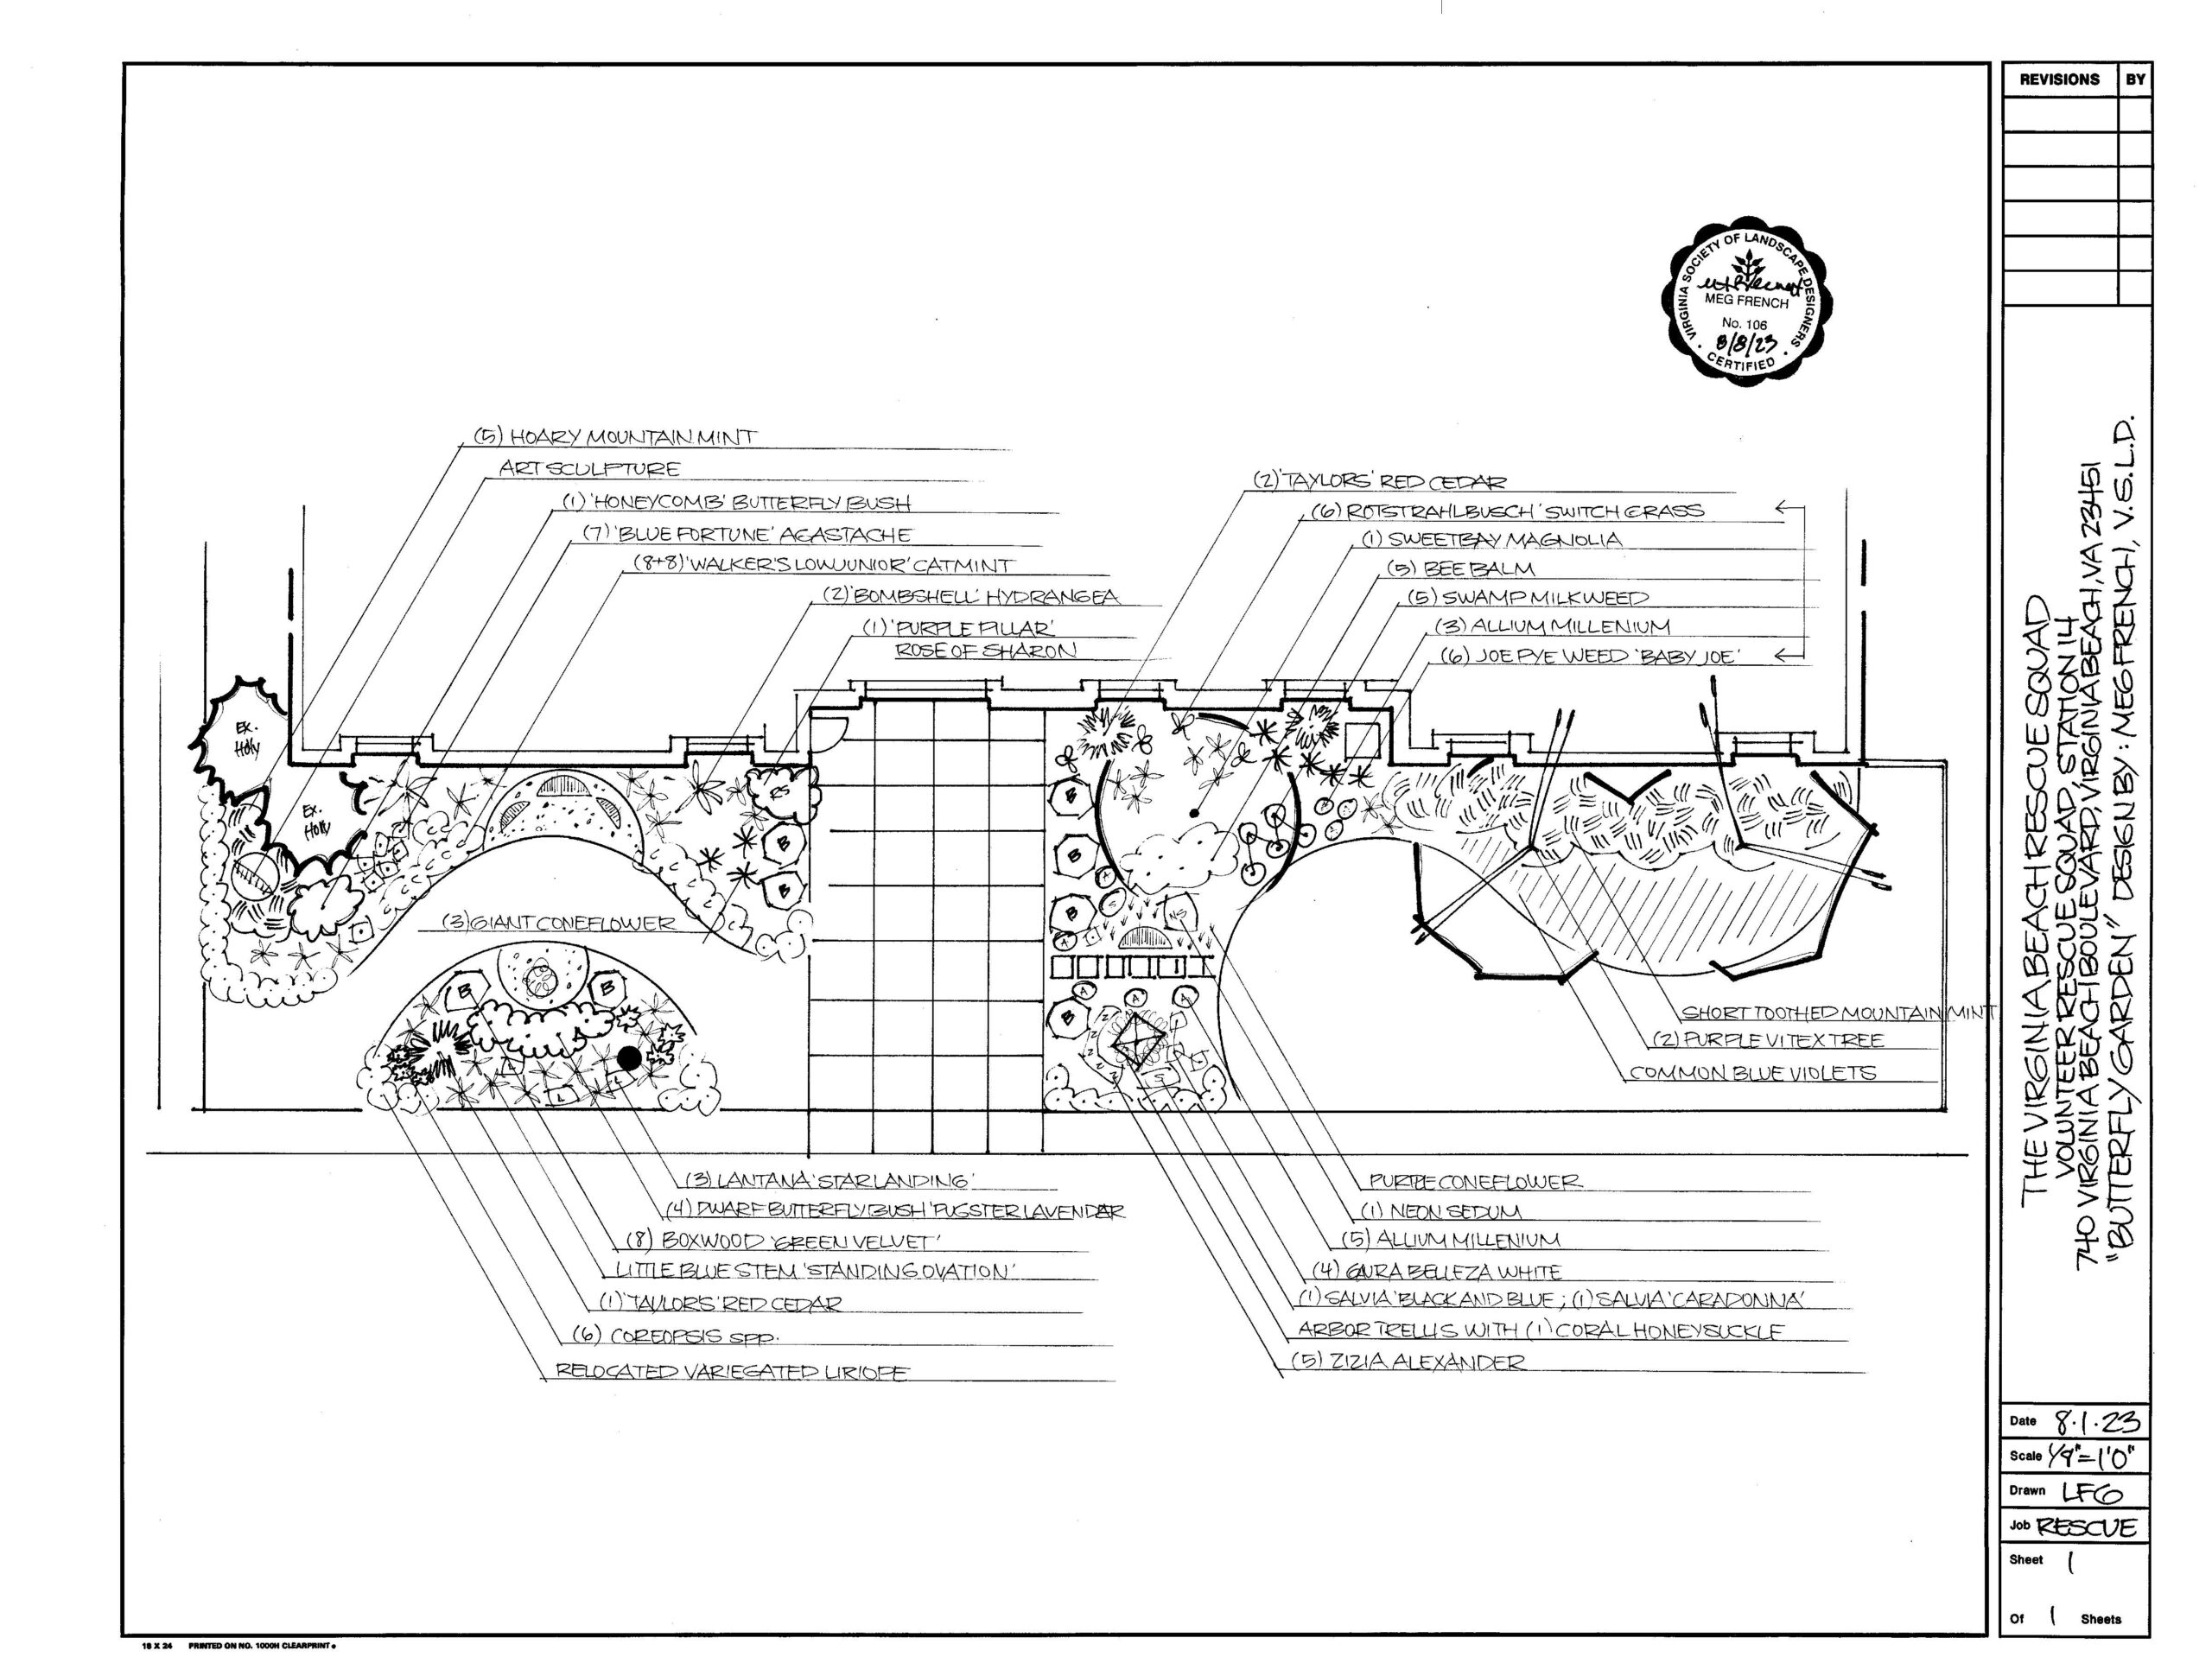 Hand drawn schematics of the VBVRS Butterfly Garden Design-Smaller